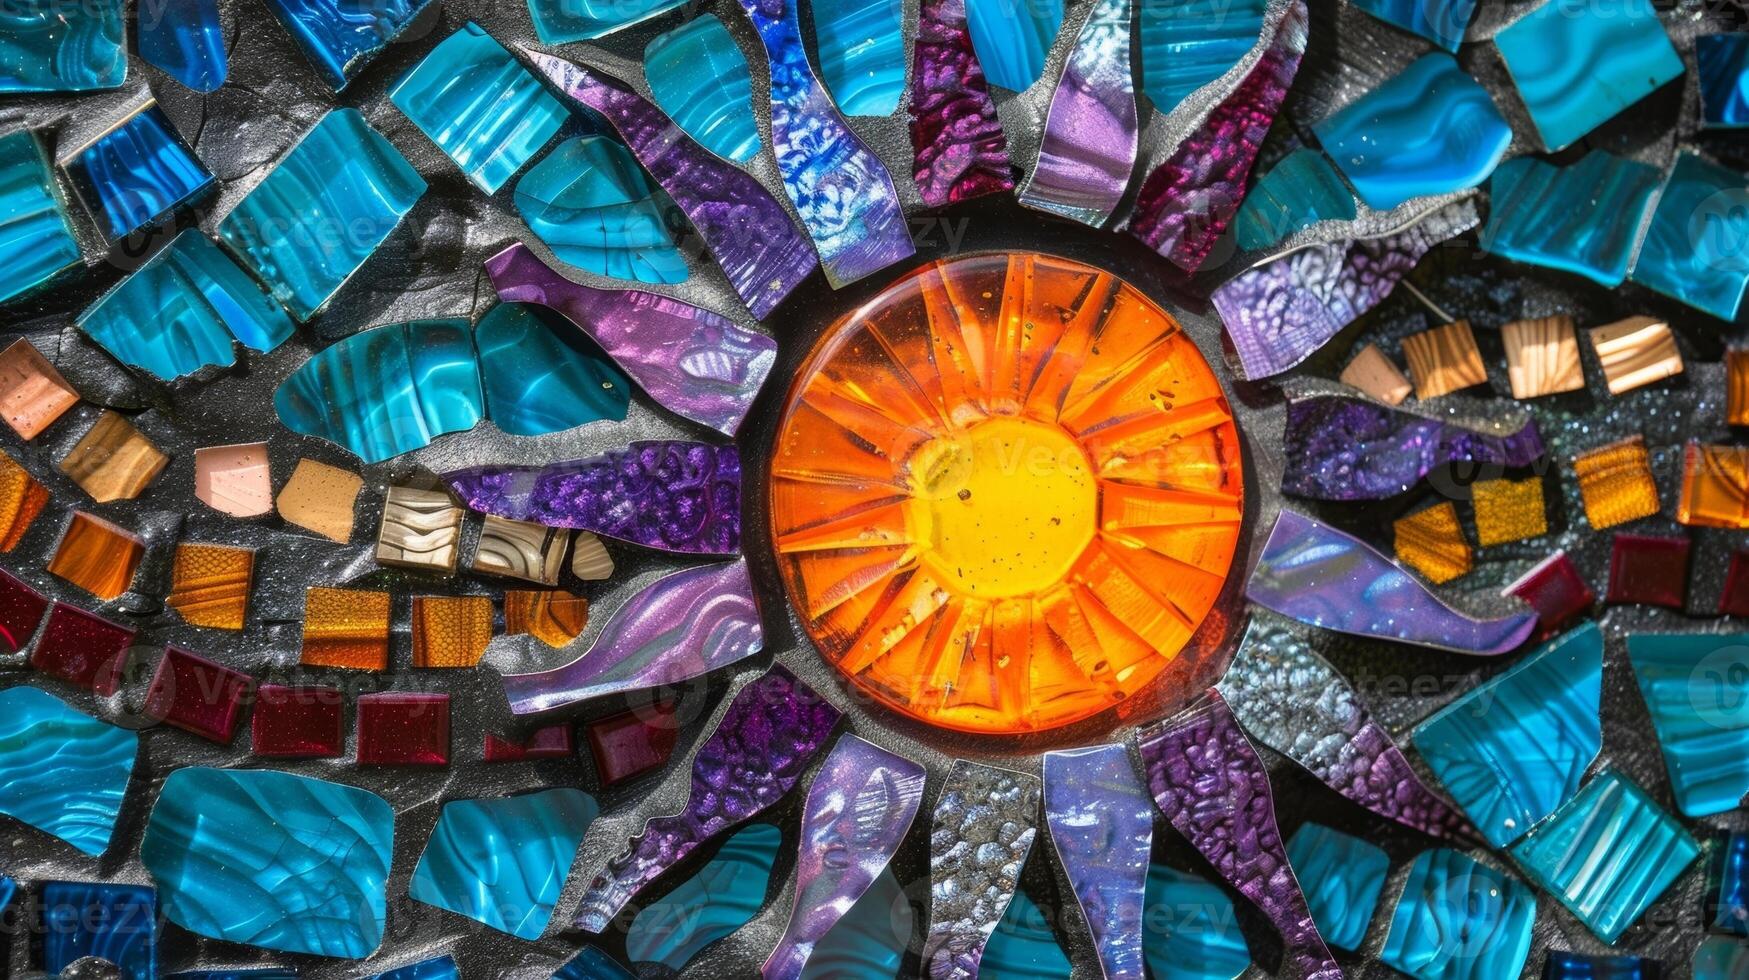 une mosaïque Soleil receveur fabriqué de une mélange de céramique carrelage et coloré verre avec des rayons de bleu violet et orange. photo